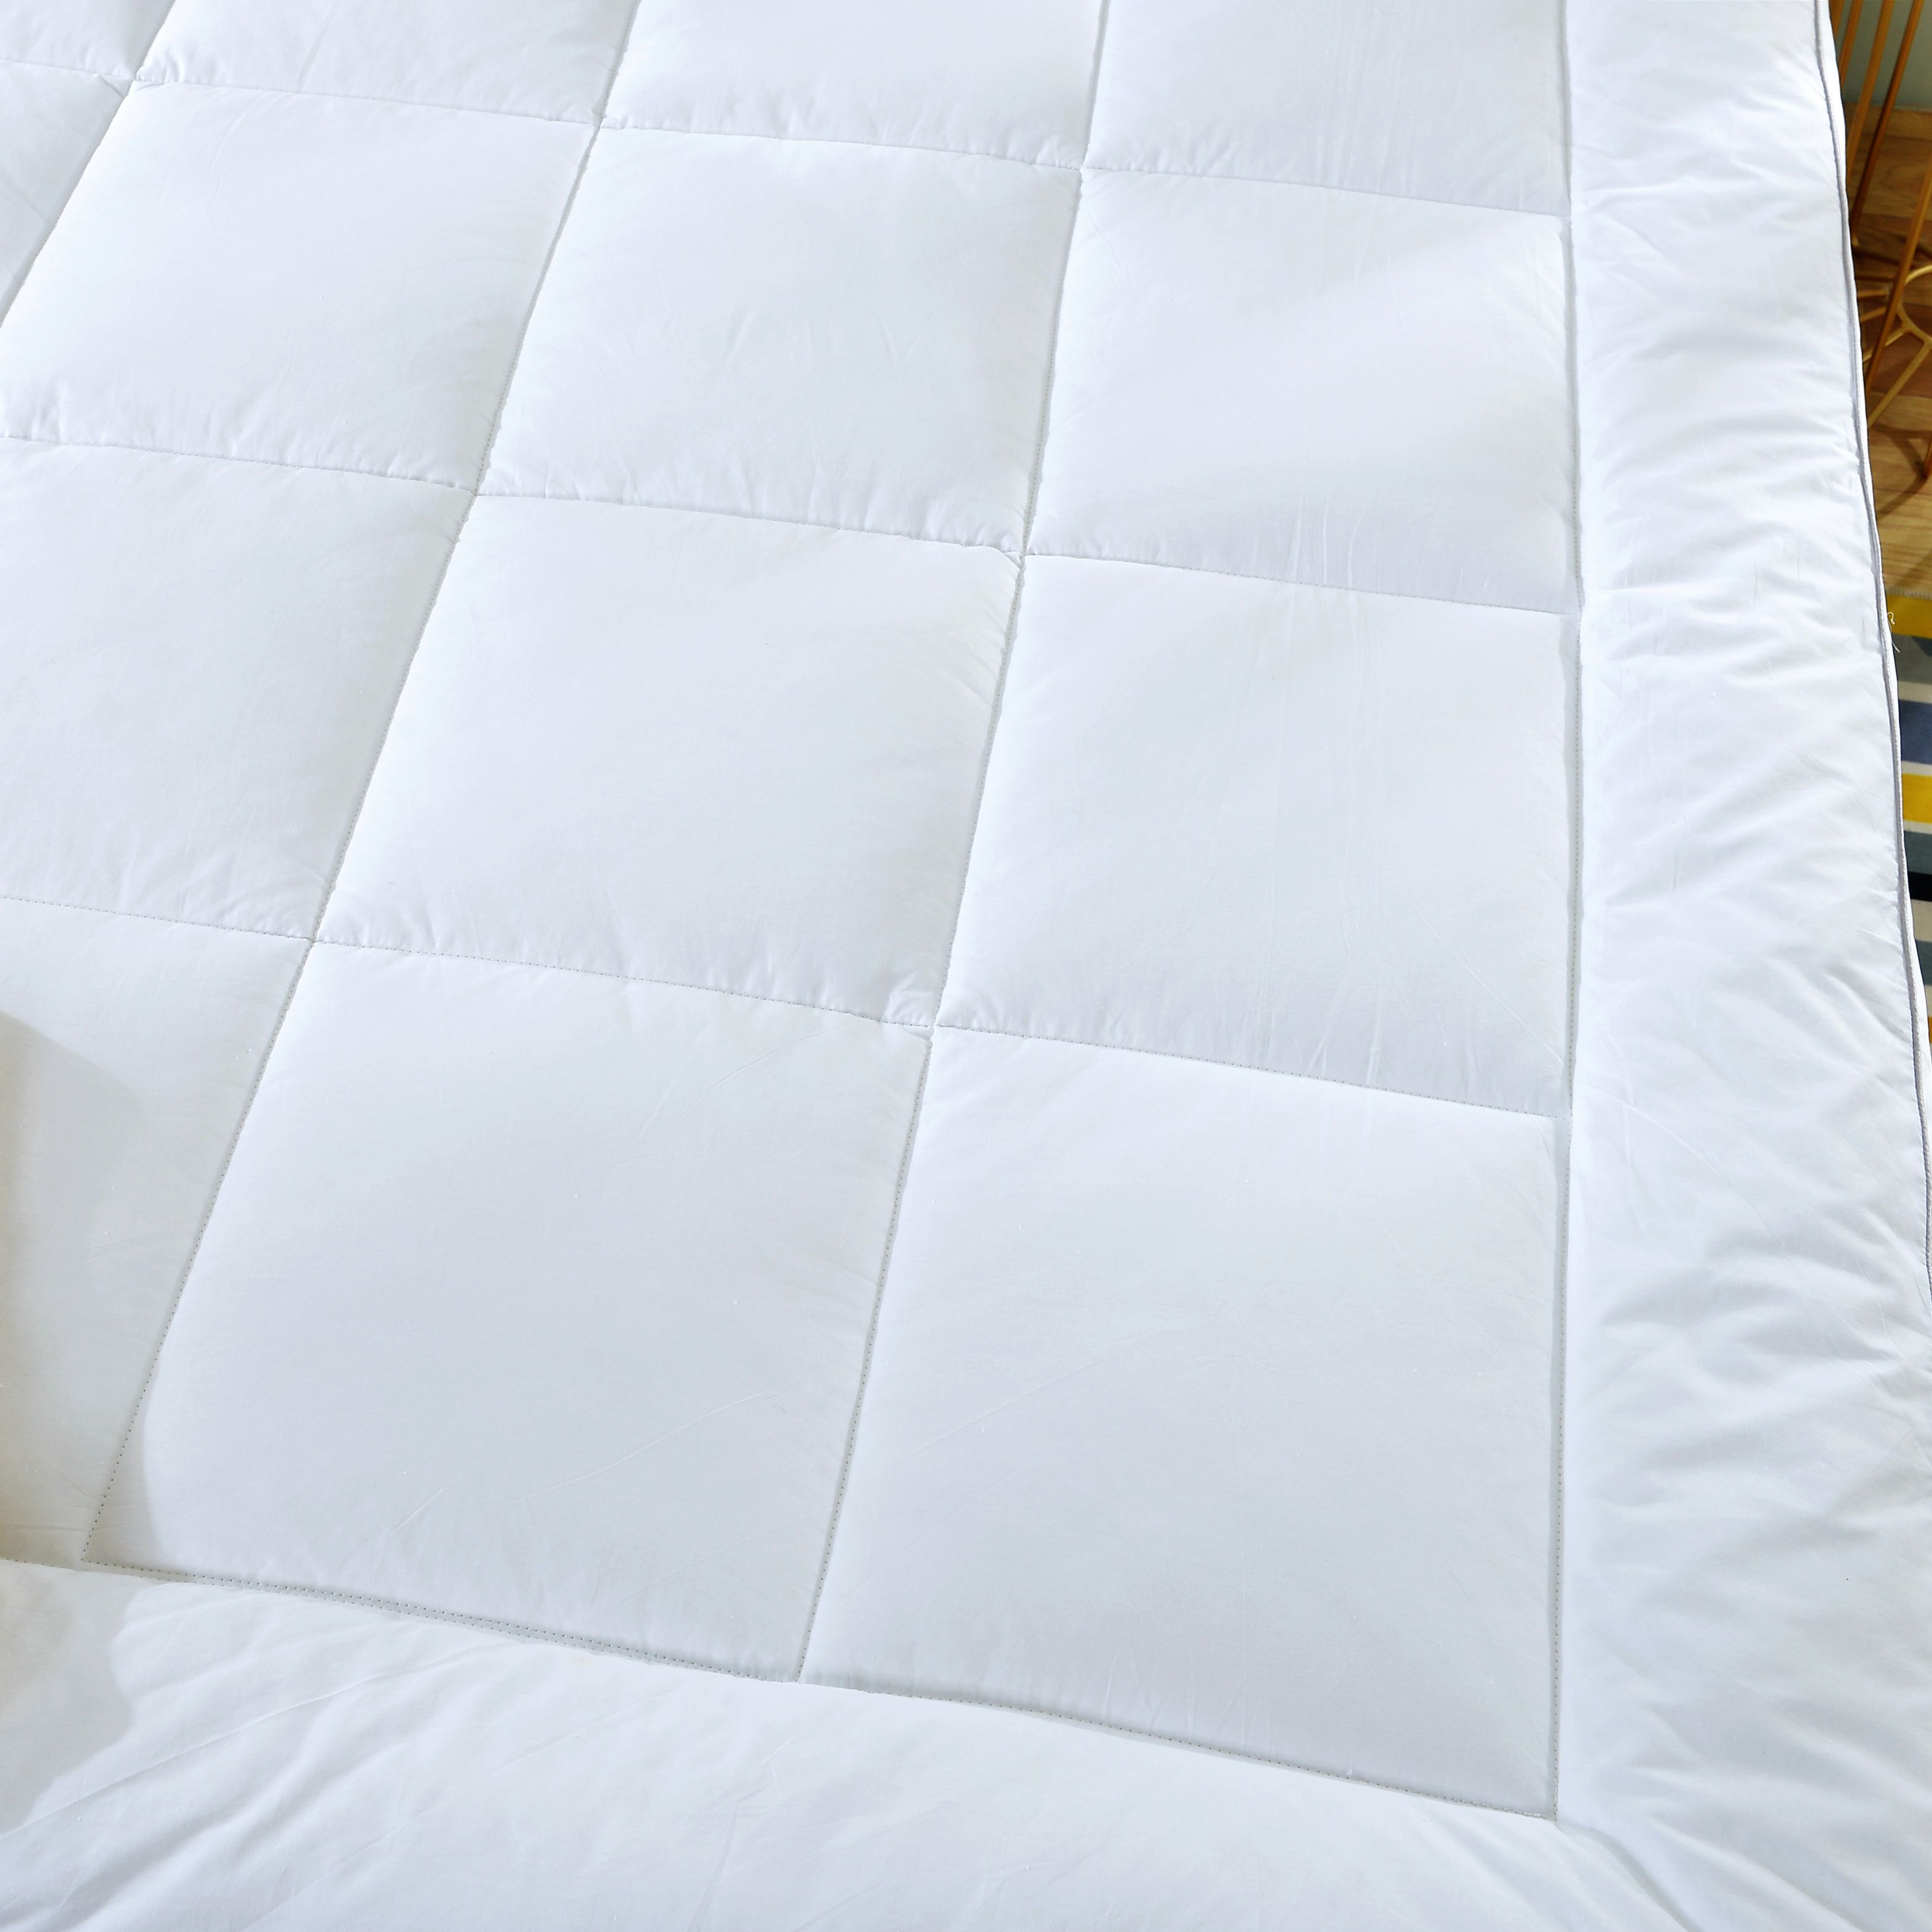 客房保护垫/酒店保护垫/酒店床品细节图